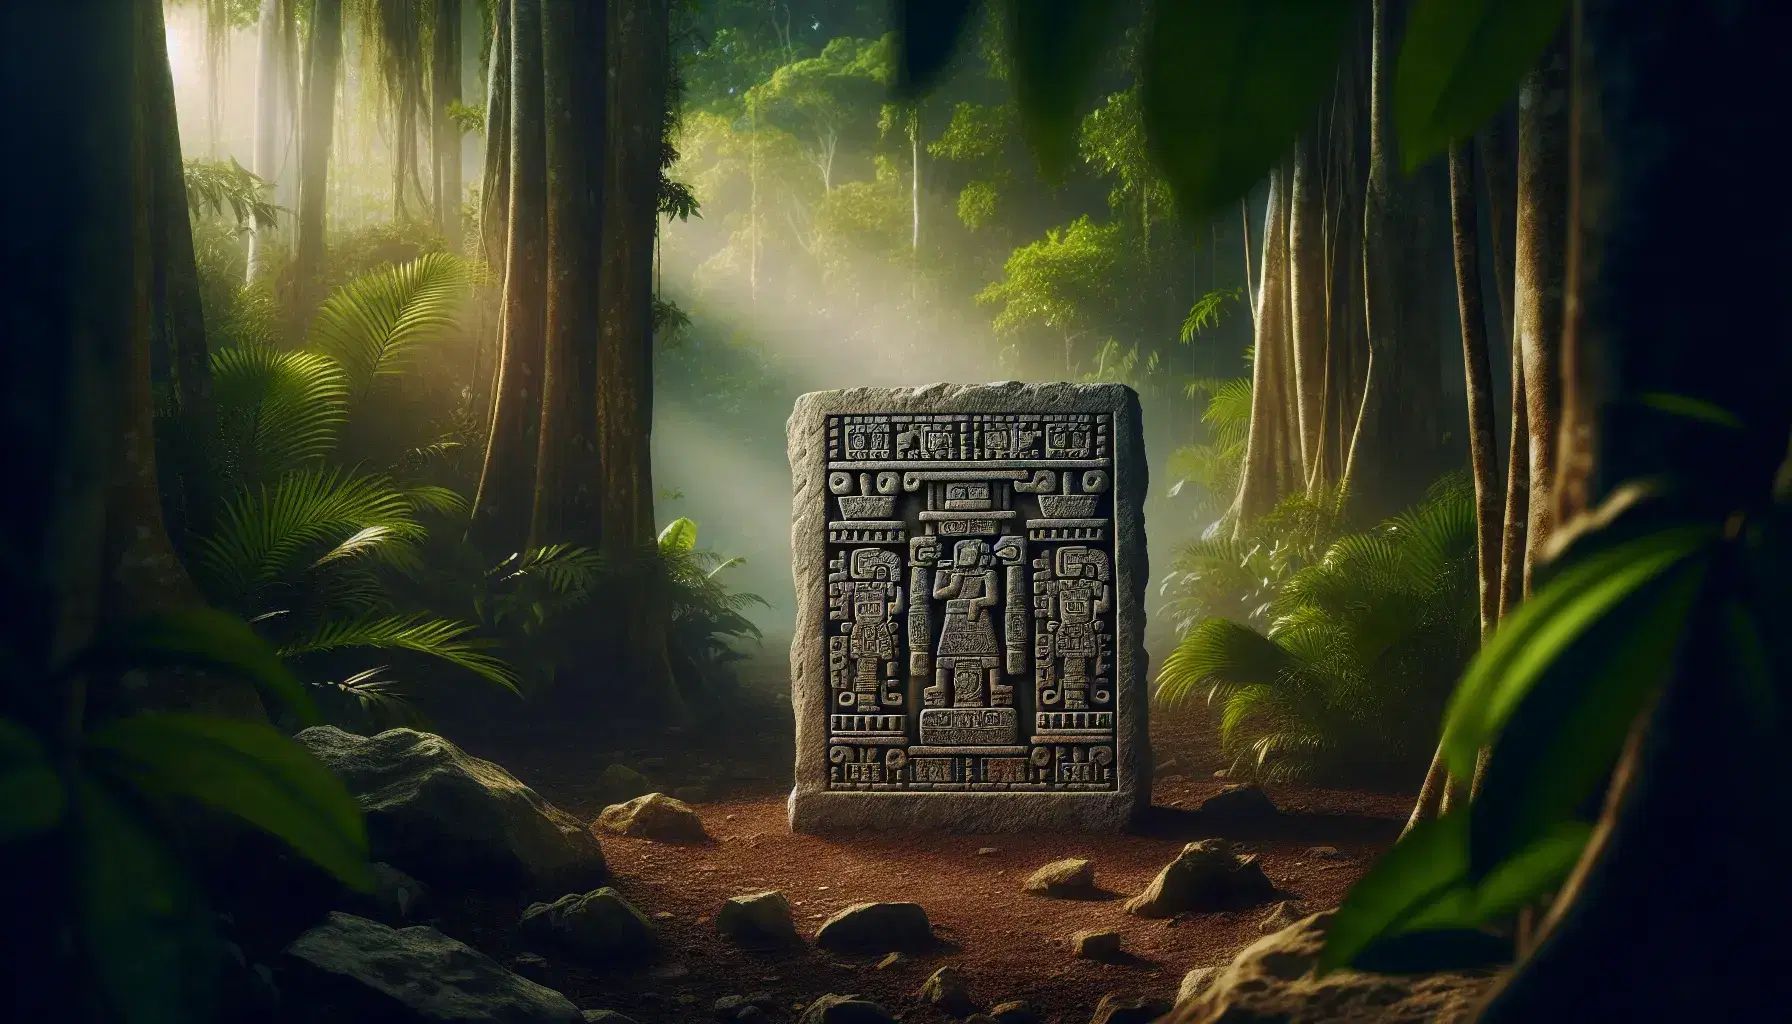 Estela maya de piedra caliza con relieves de figuras humanas ceremoniales y formas geométricas, en un fondo borroso de selva tropical.